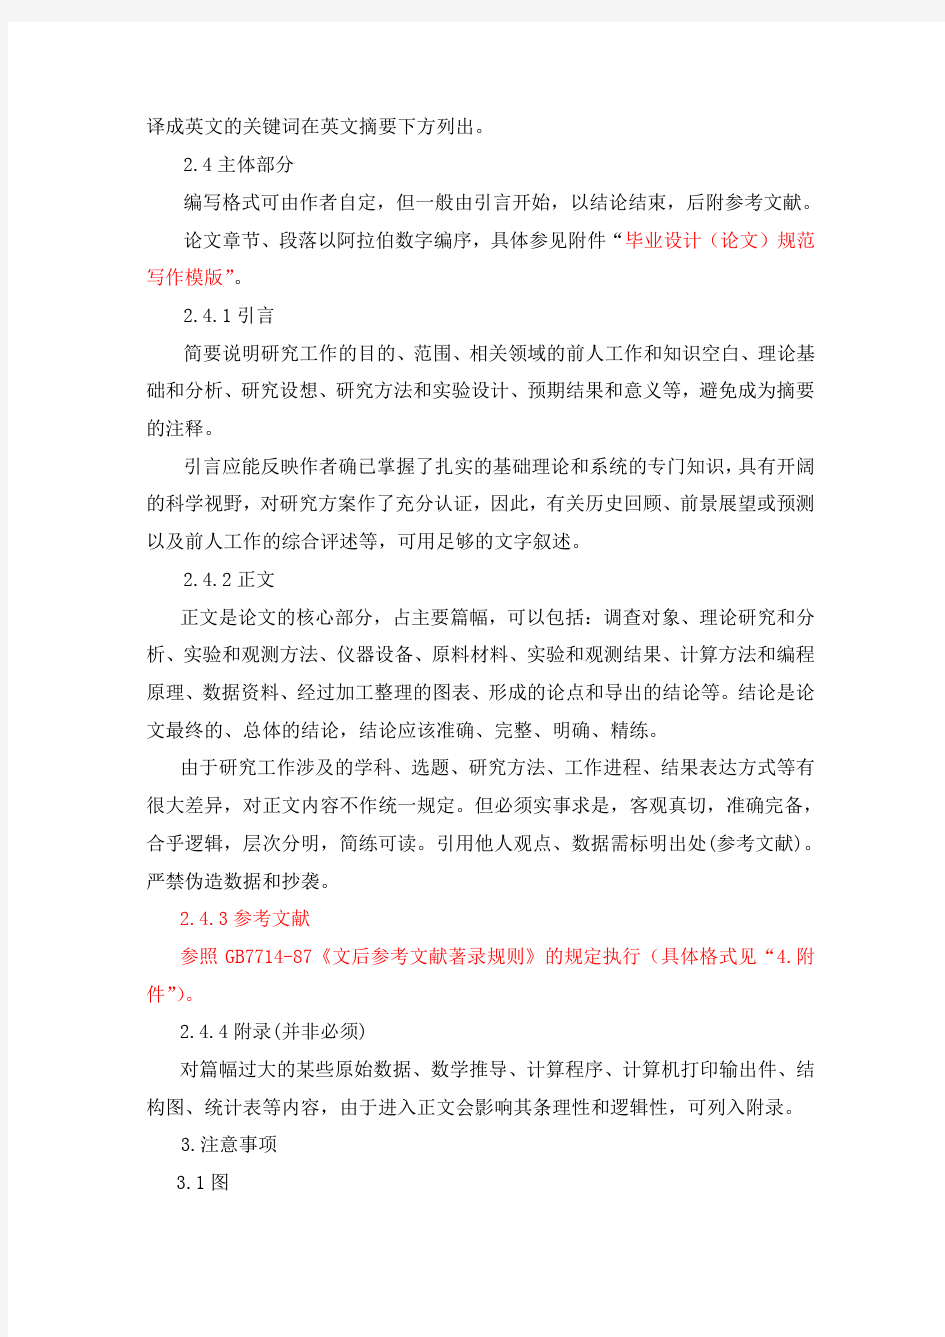 2019年整理上海工程技术大学本科毕业设计(论文)规范写作要求资料